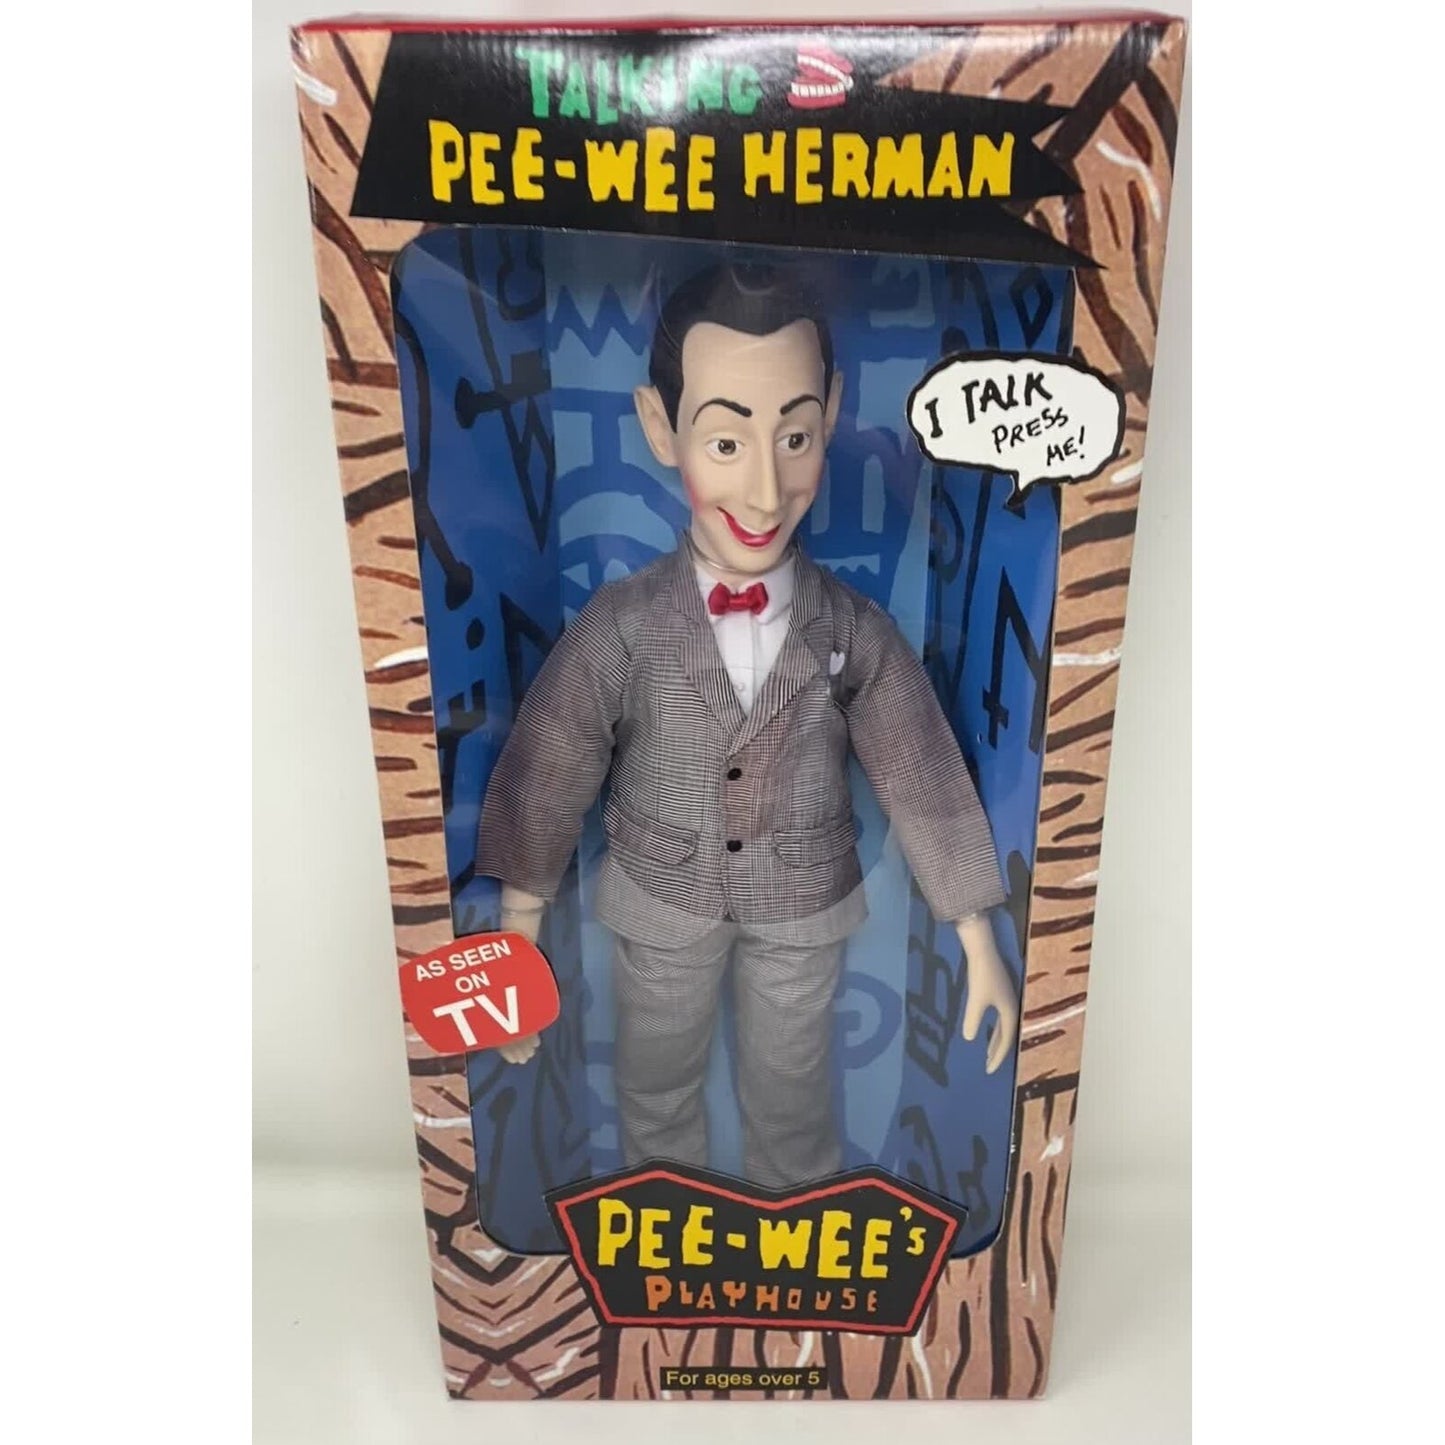 BRAND NEW Vintage Pee-Wee Herman Talking 18" Doll - Herman World